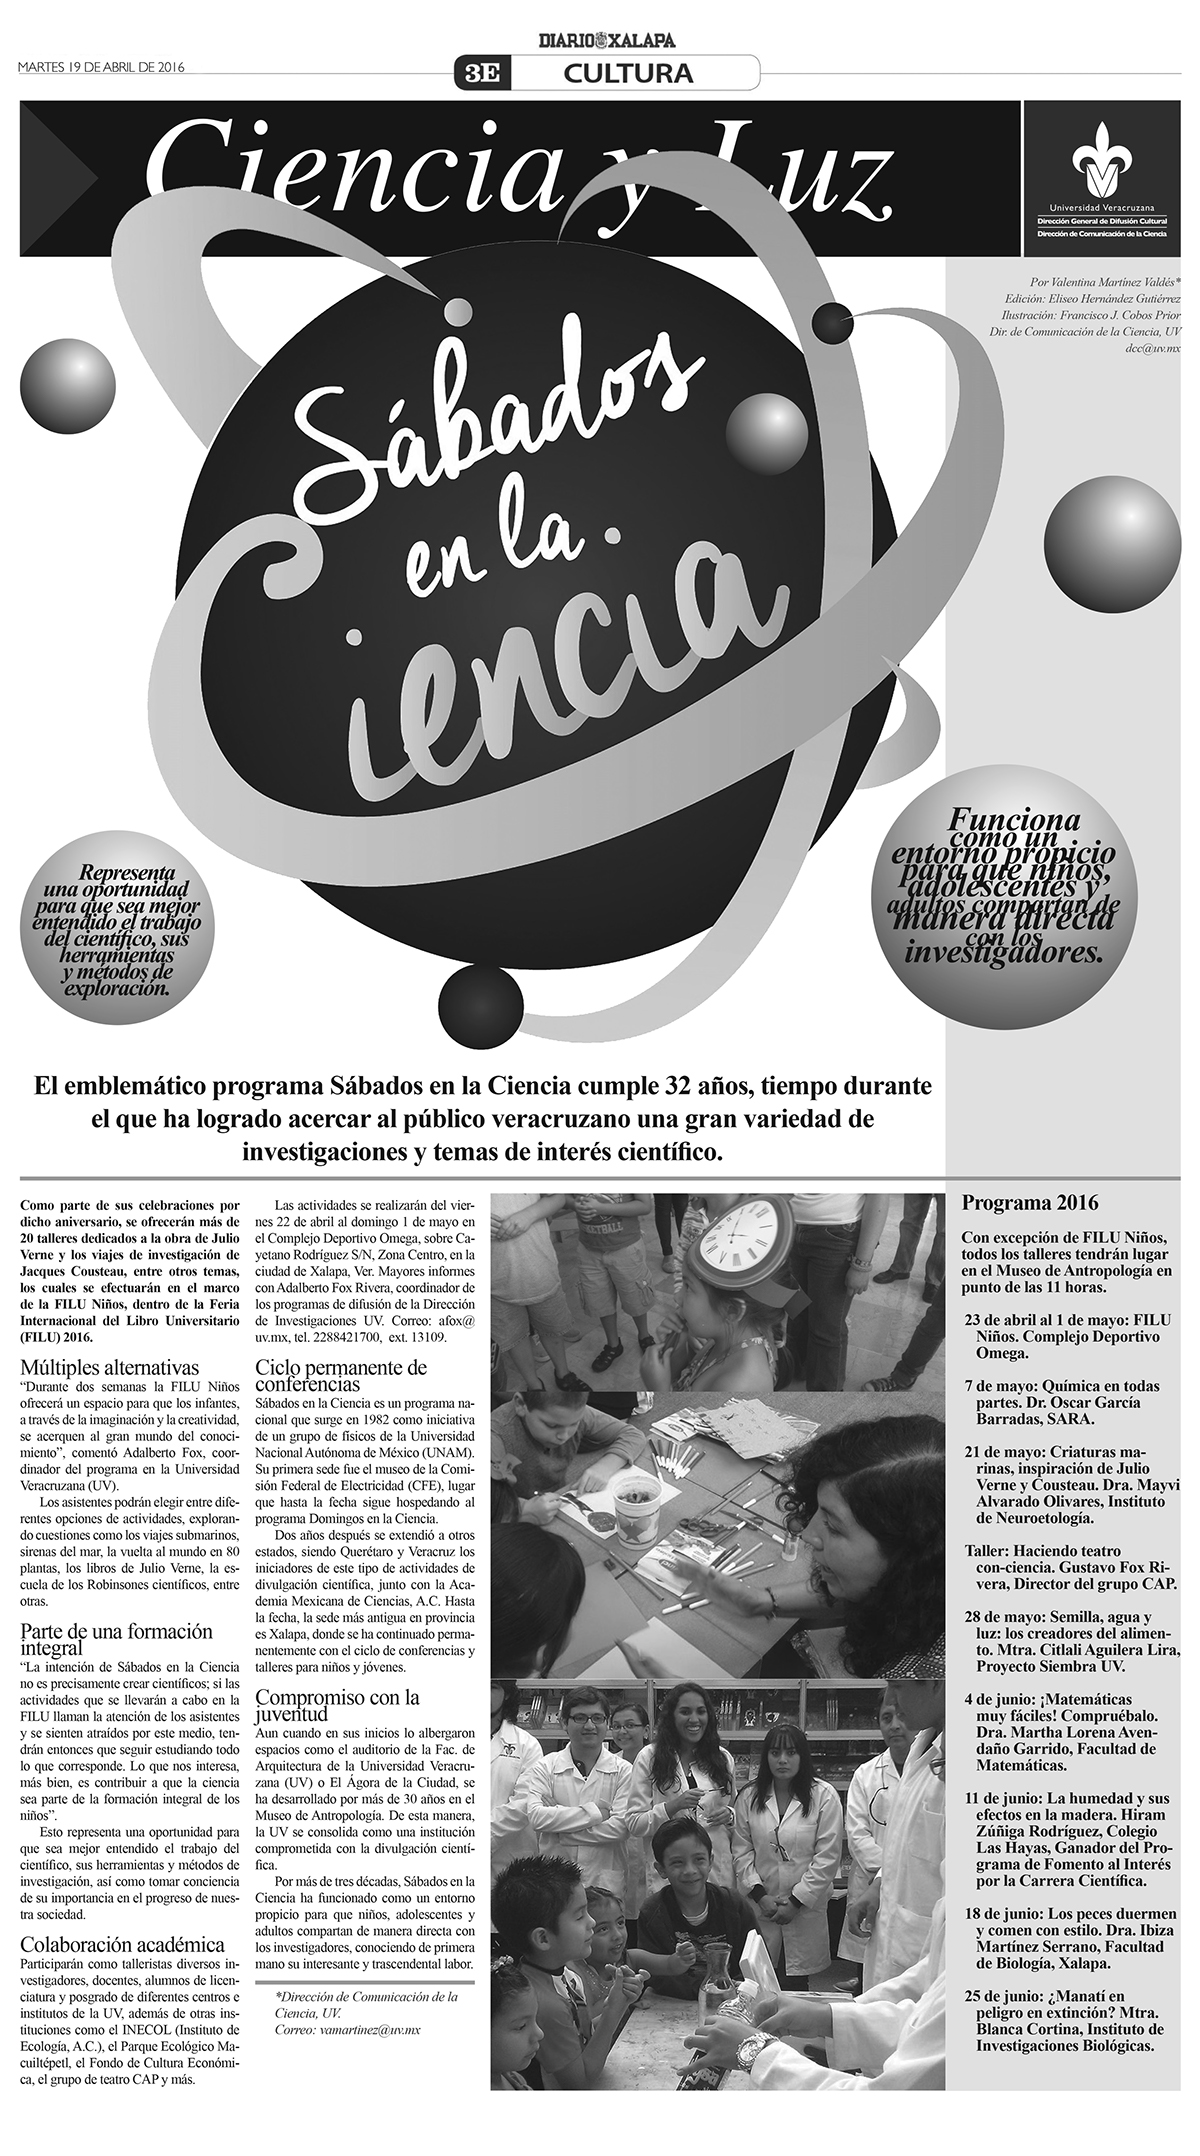 Diseño editorial diseño gráfico divulgación de la ciencia divulgacion cientifica Periodismo veracruz mexico xalapa